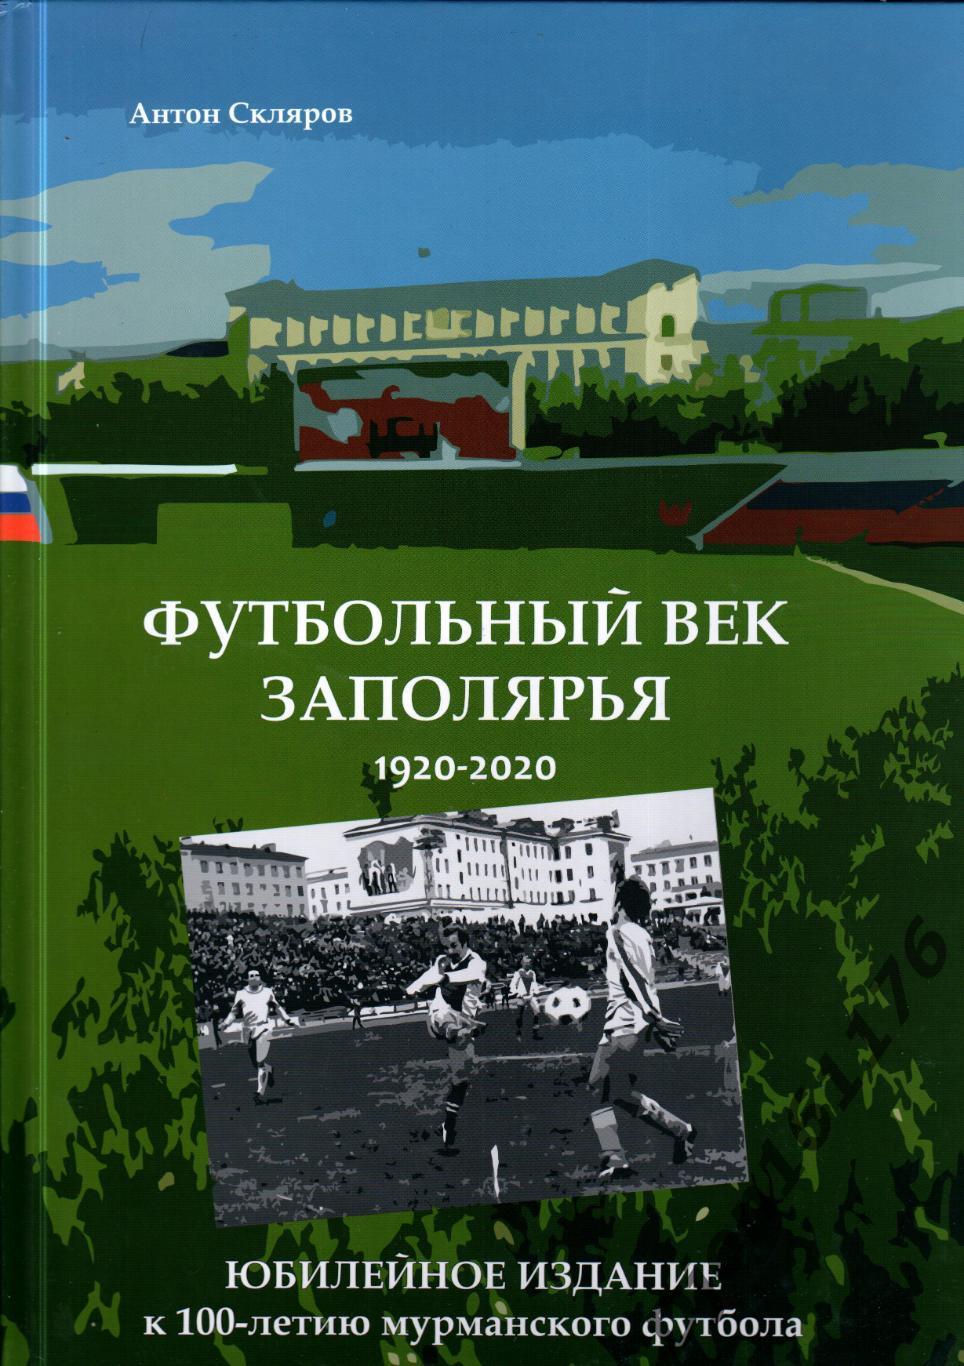 «Футбольный век Заполярья 1920-2020».